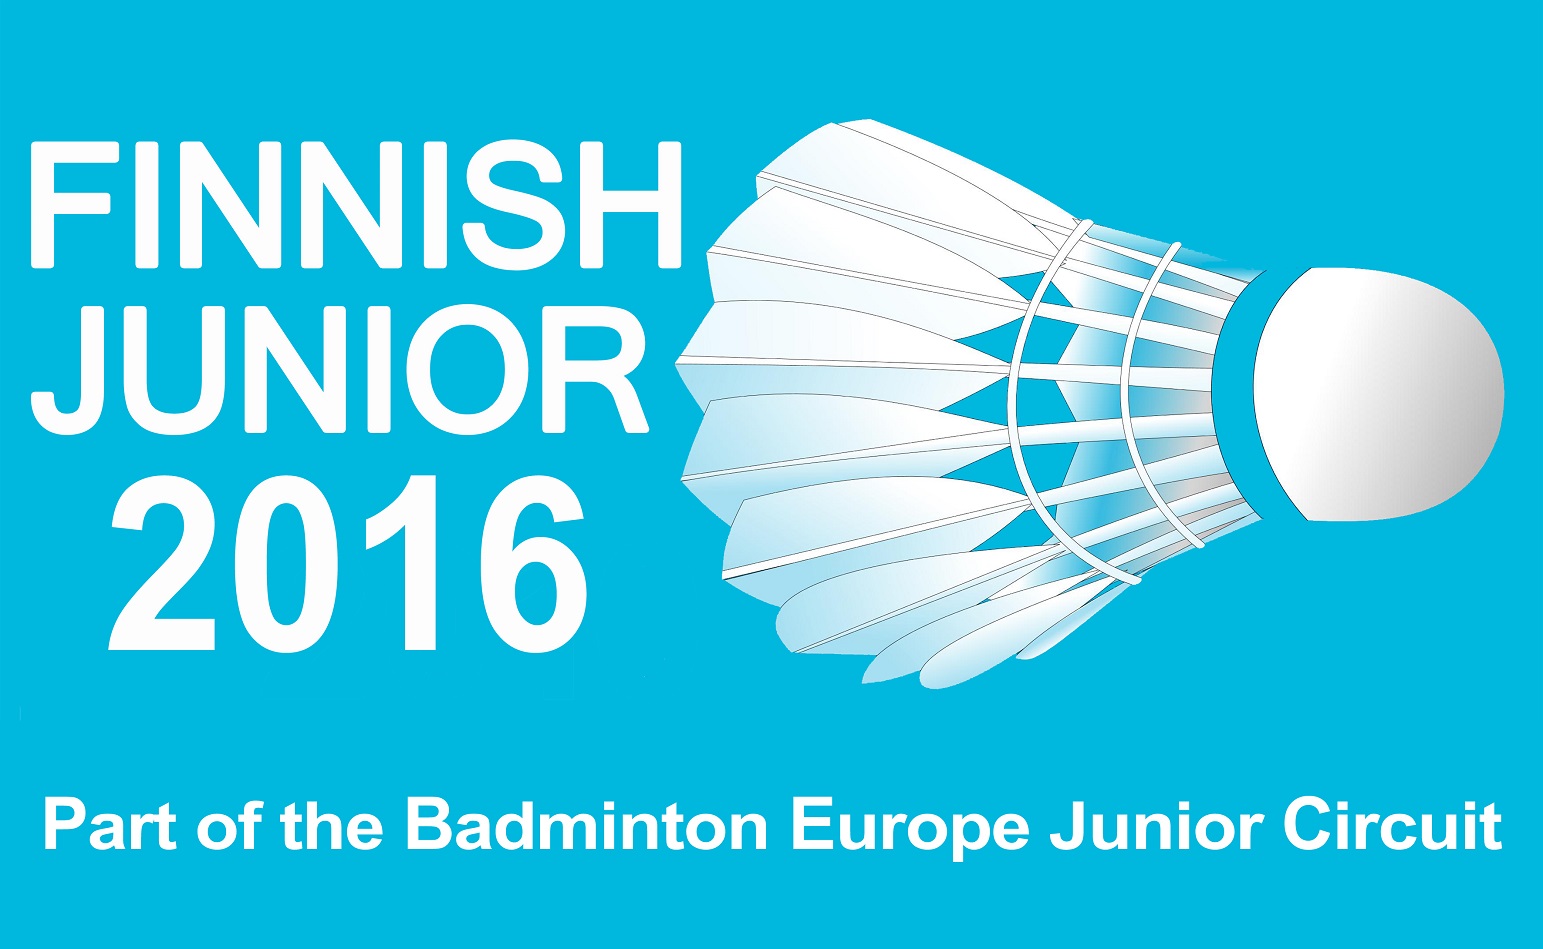 Finnish Junior 2016 logo